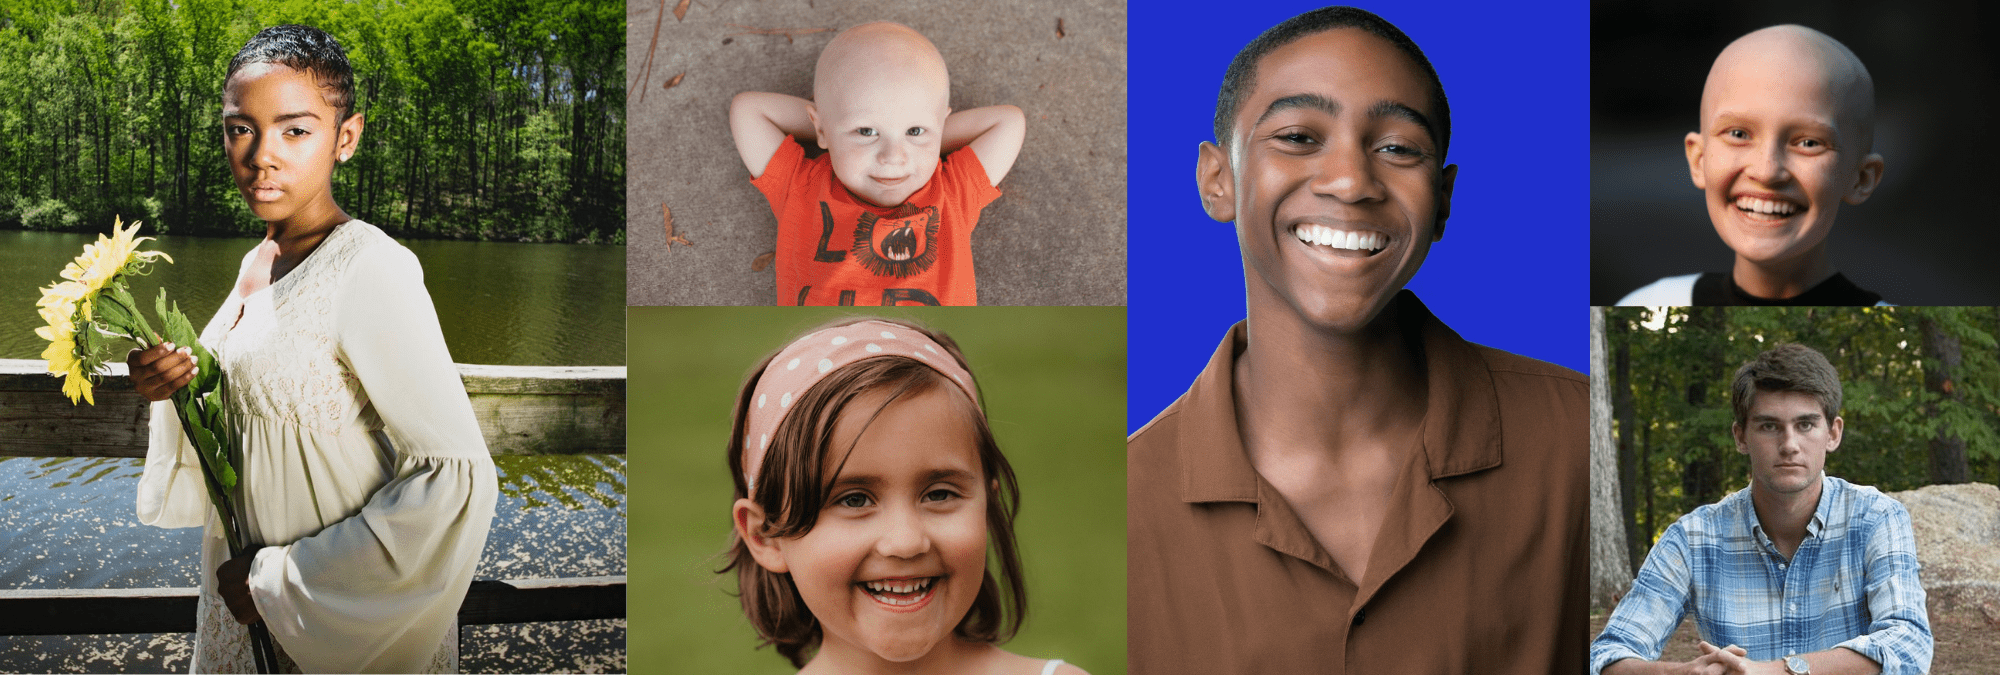 16 Ways to Help Children Fighting Cancer